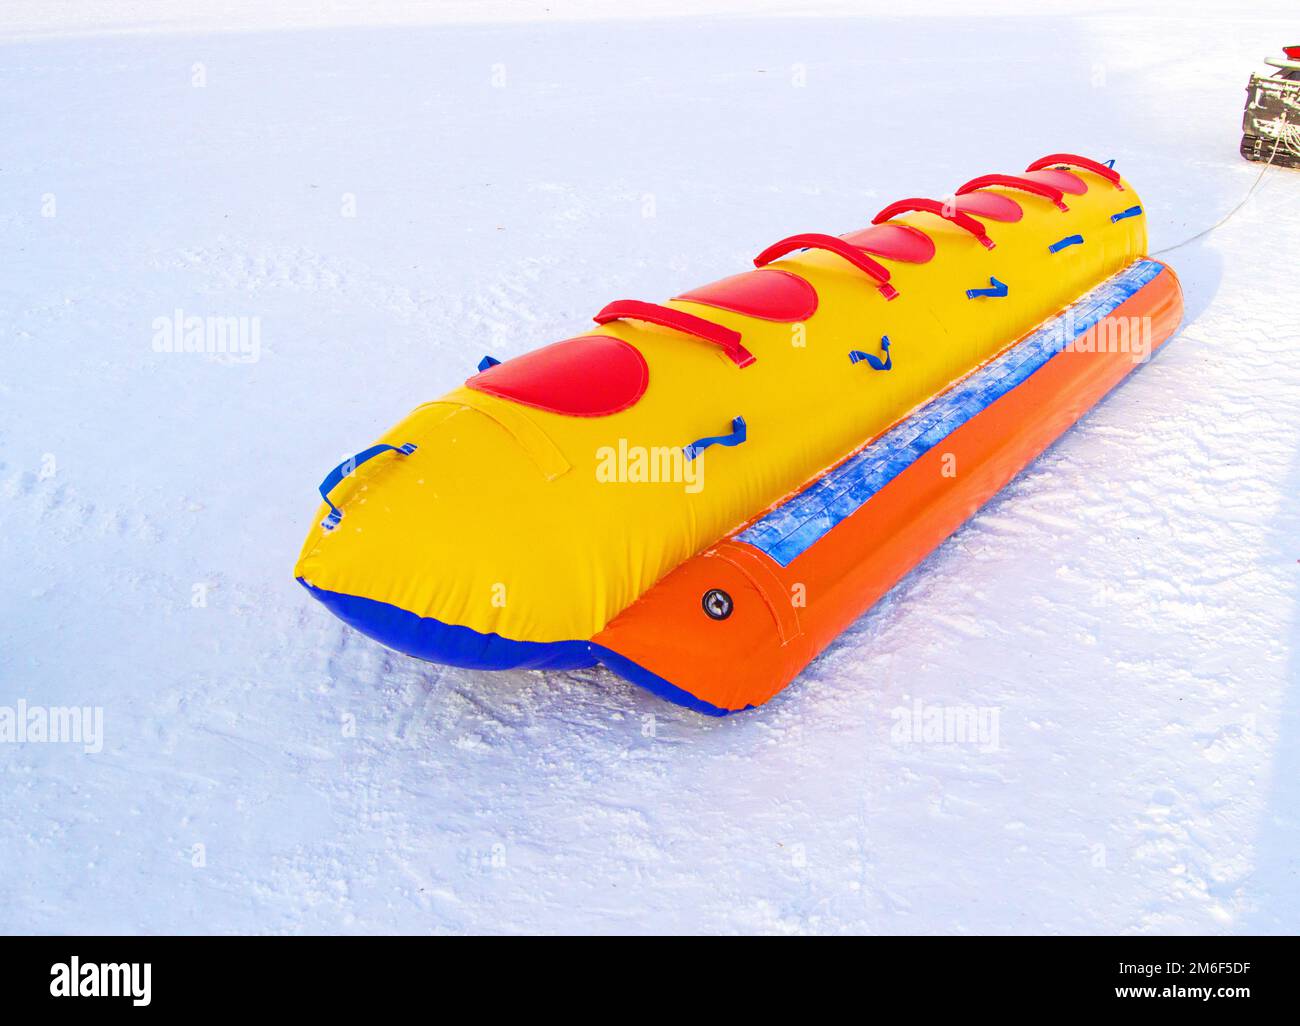 Traîneau gonflable à plusieurs places en caoutchouc pour le ski à grande vitesse en hiver, concept d'activité d'hiver an Banque D'Images